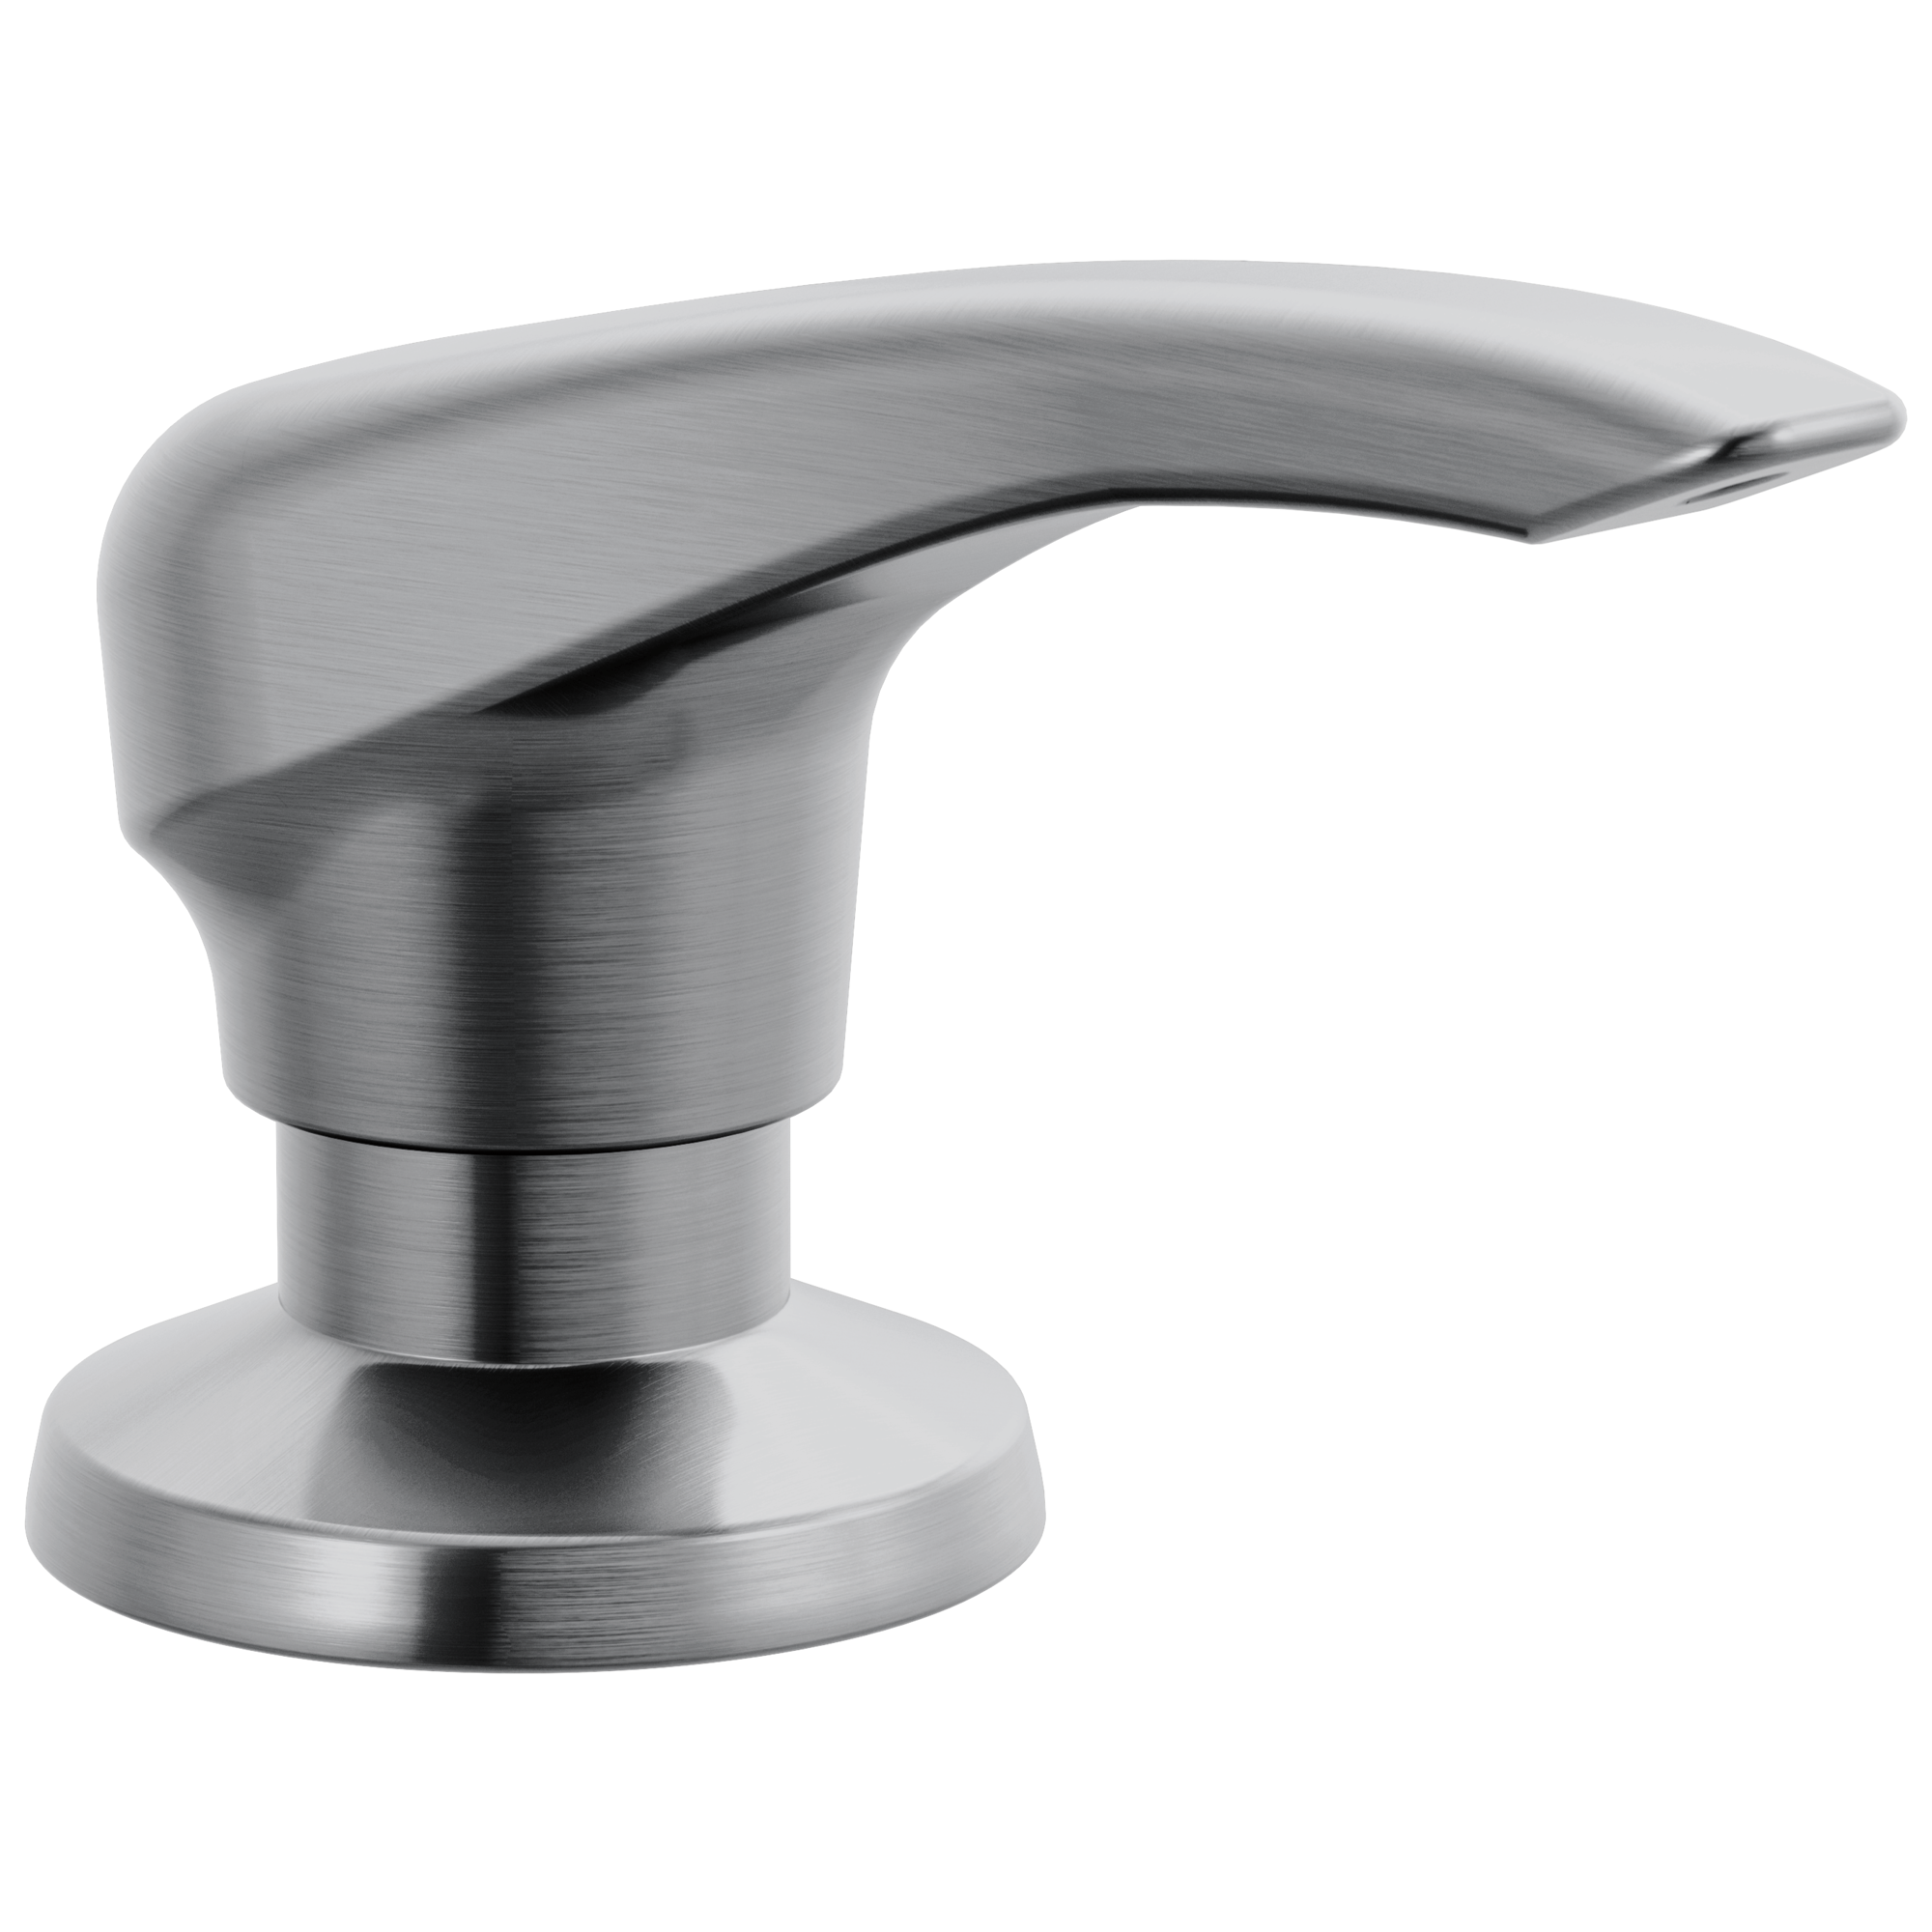 Delta Esque: Metal Soap Dispenser